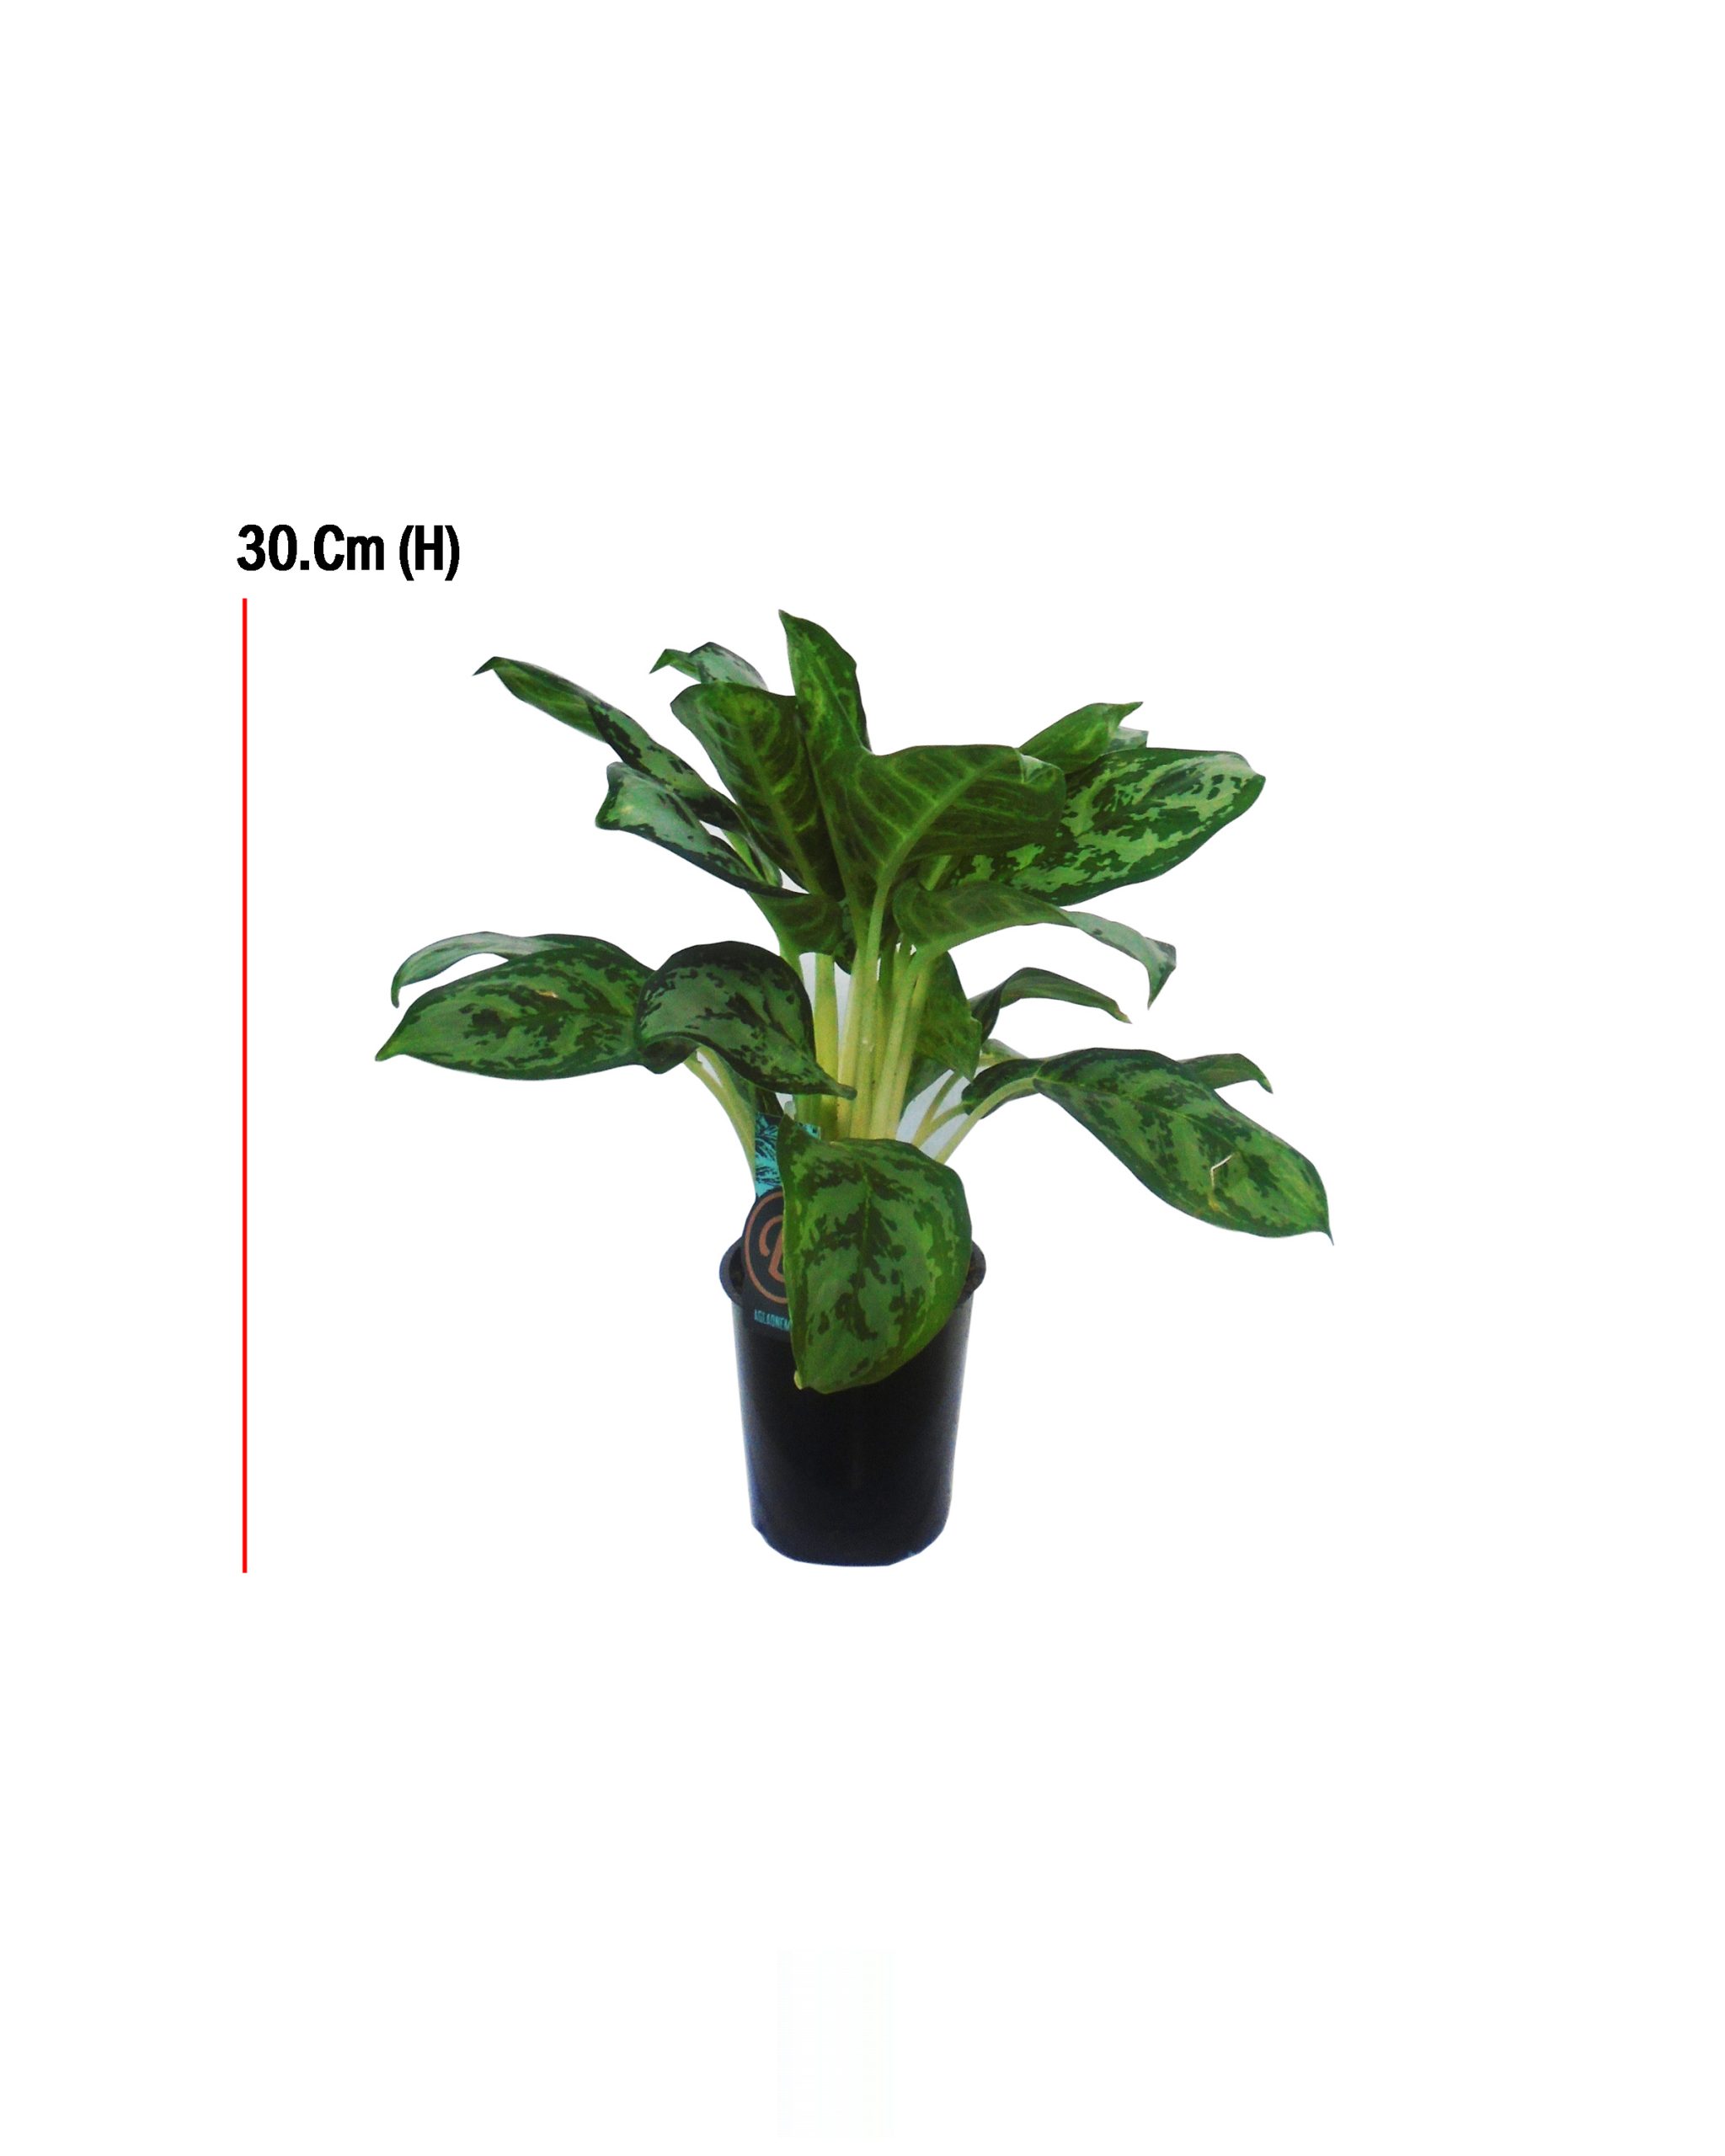 Buy Aglaonema Mixed Green Varieties, Height : 30cm, Pot size: 12cm Online on Qetaat.com